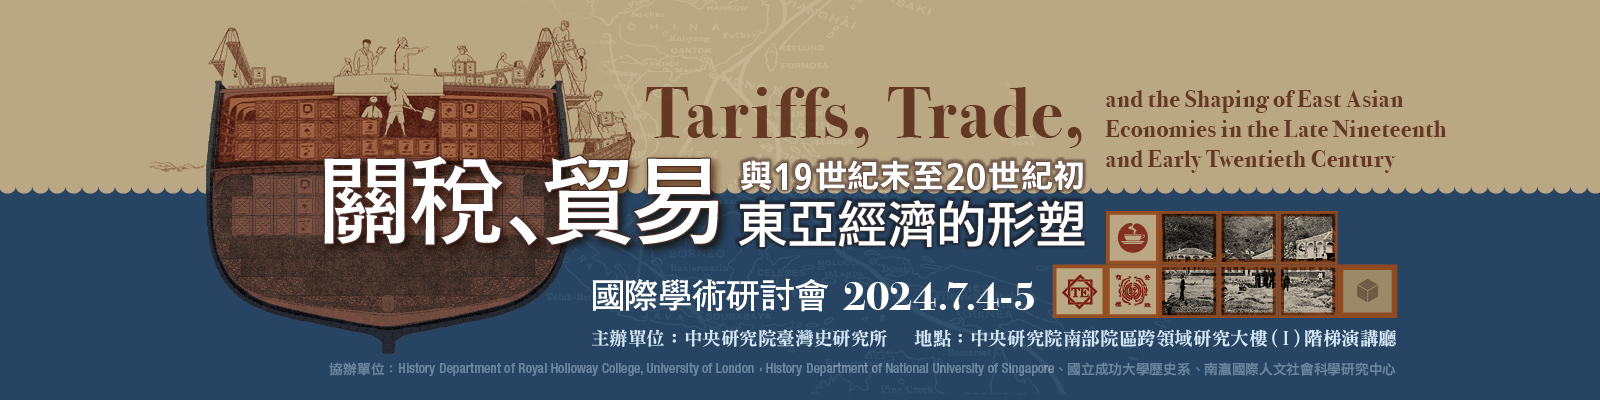 關稅、貿易與十九世紀末至二十世紀初東亞經濟的形塑